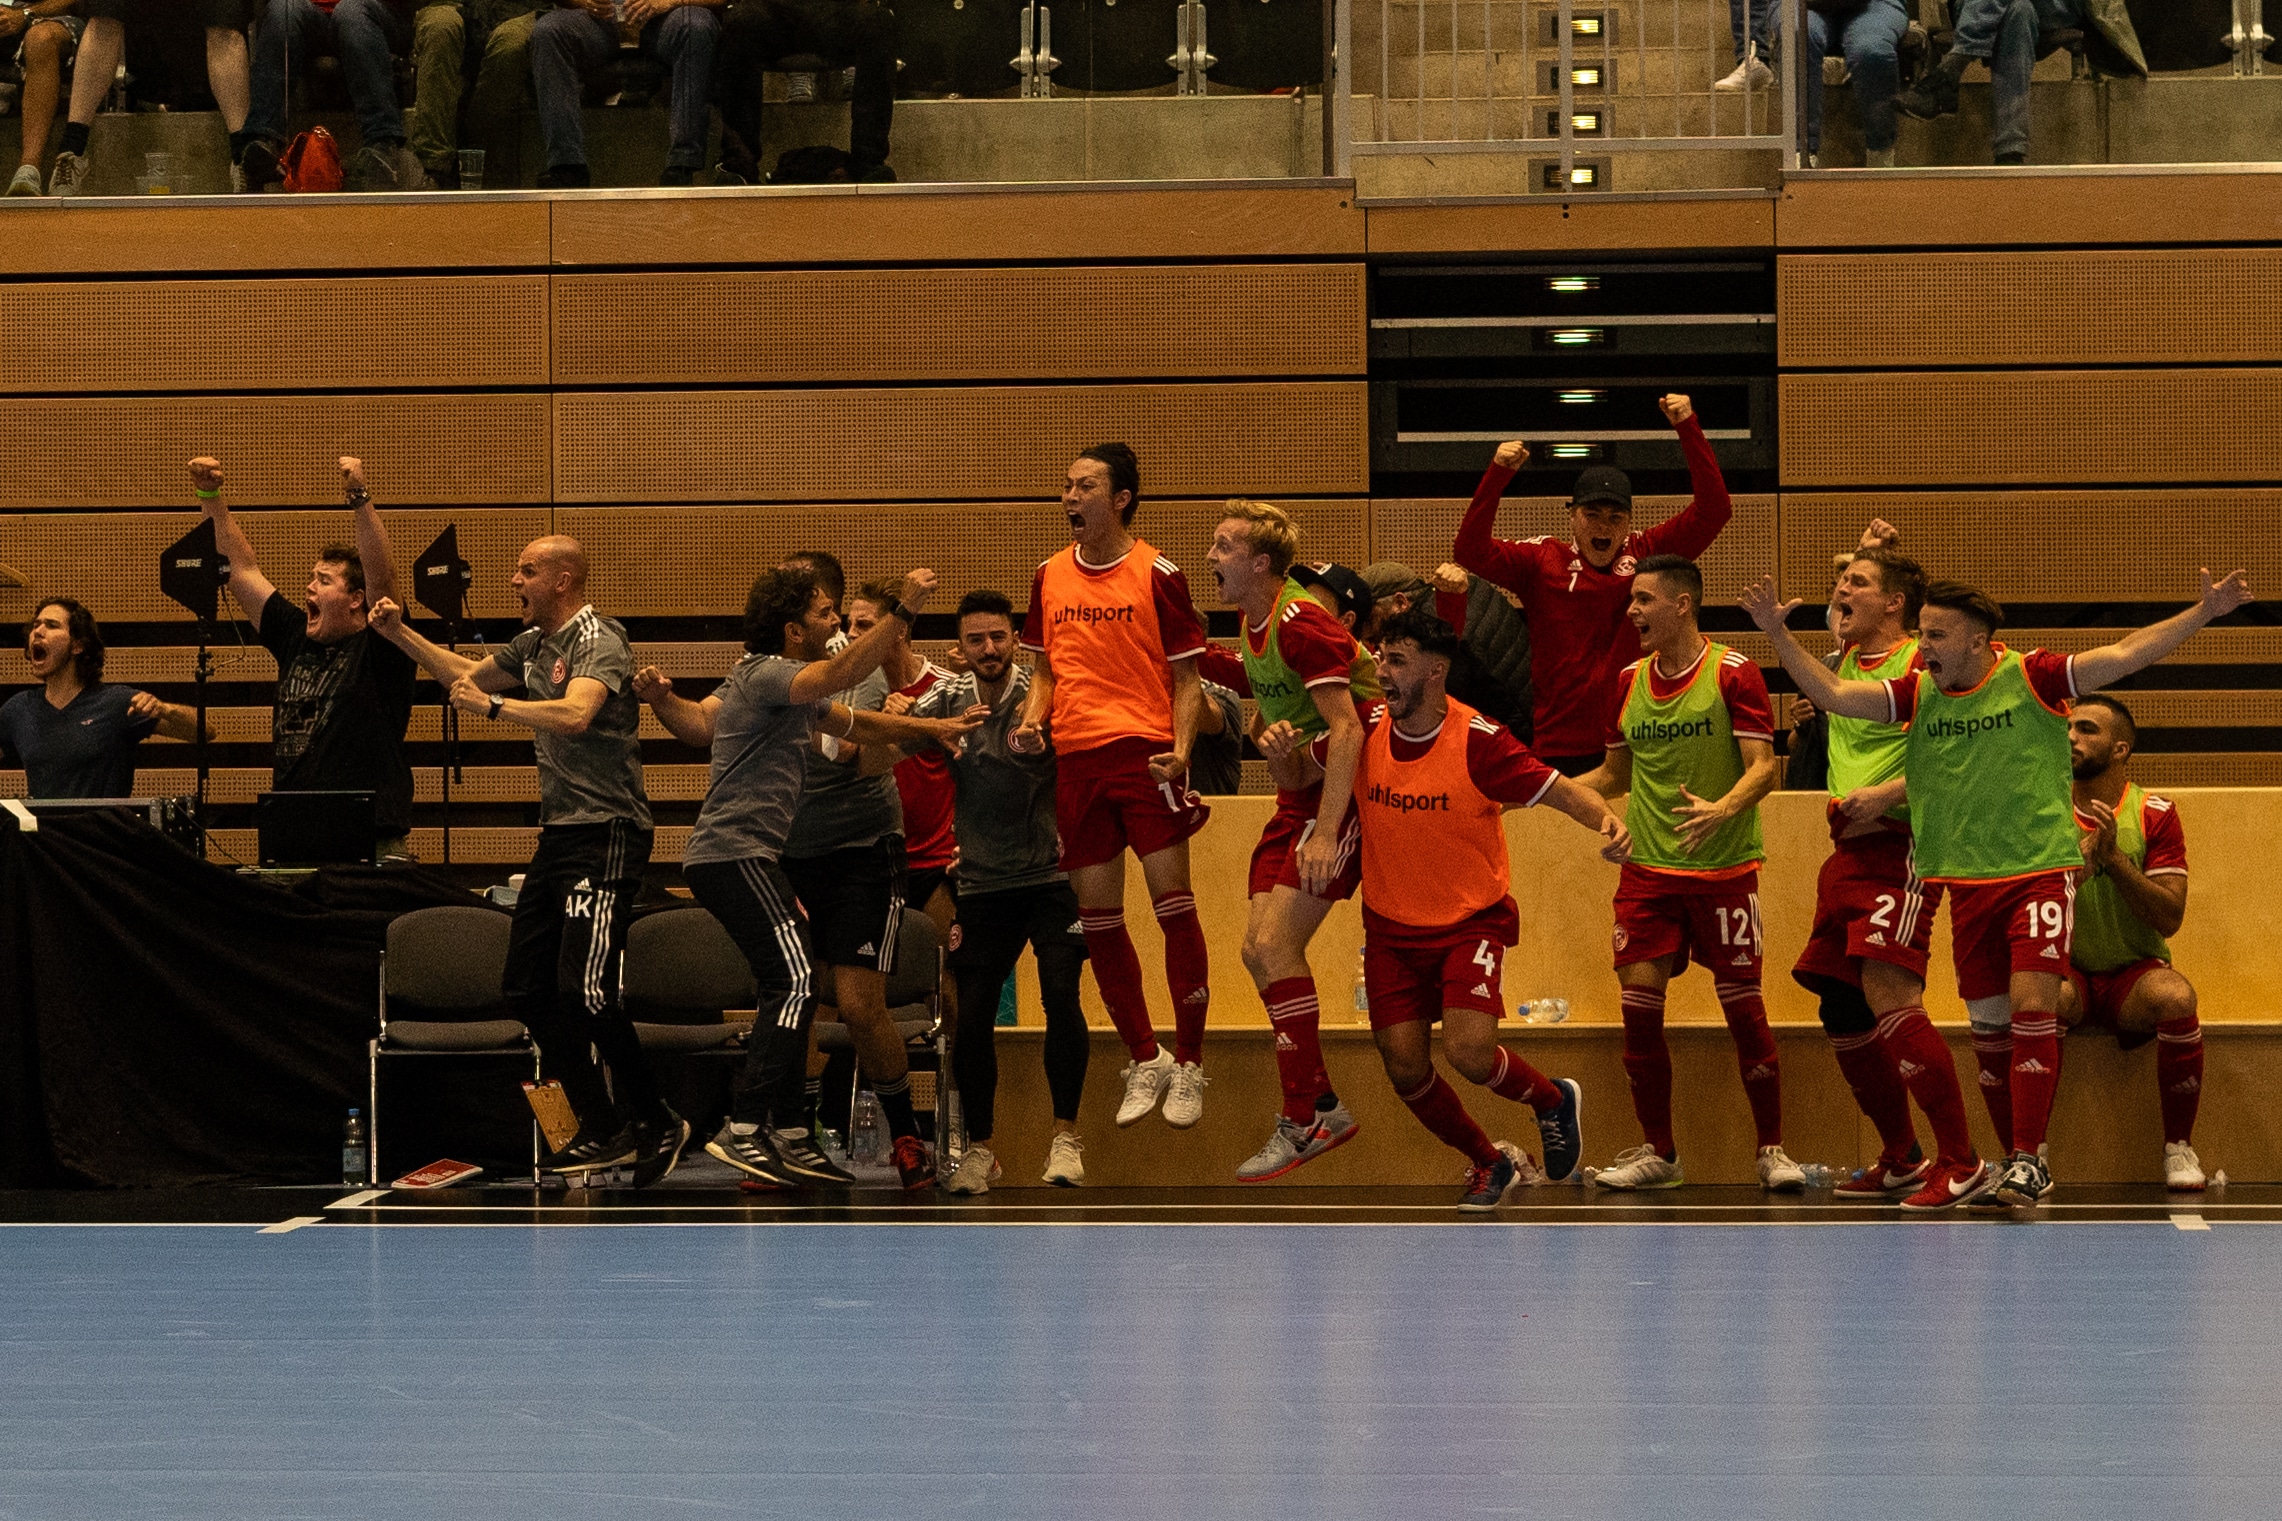 DSC03412 1 - Die Futsal-Bundesliga geht in die Playoffs | Eine spannende Premierensaison im Überblick